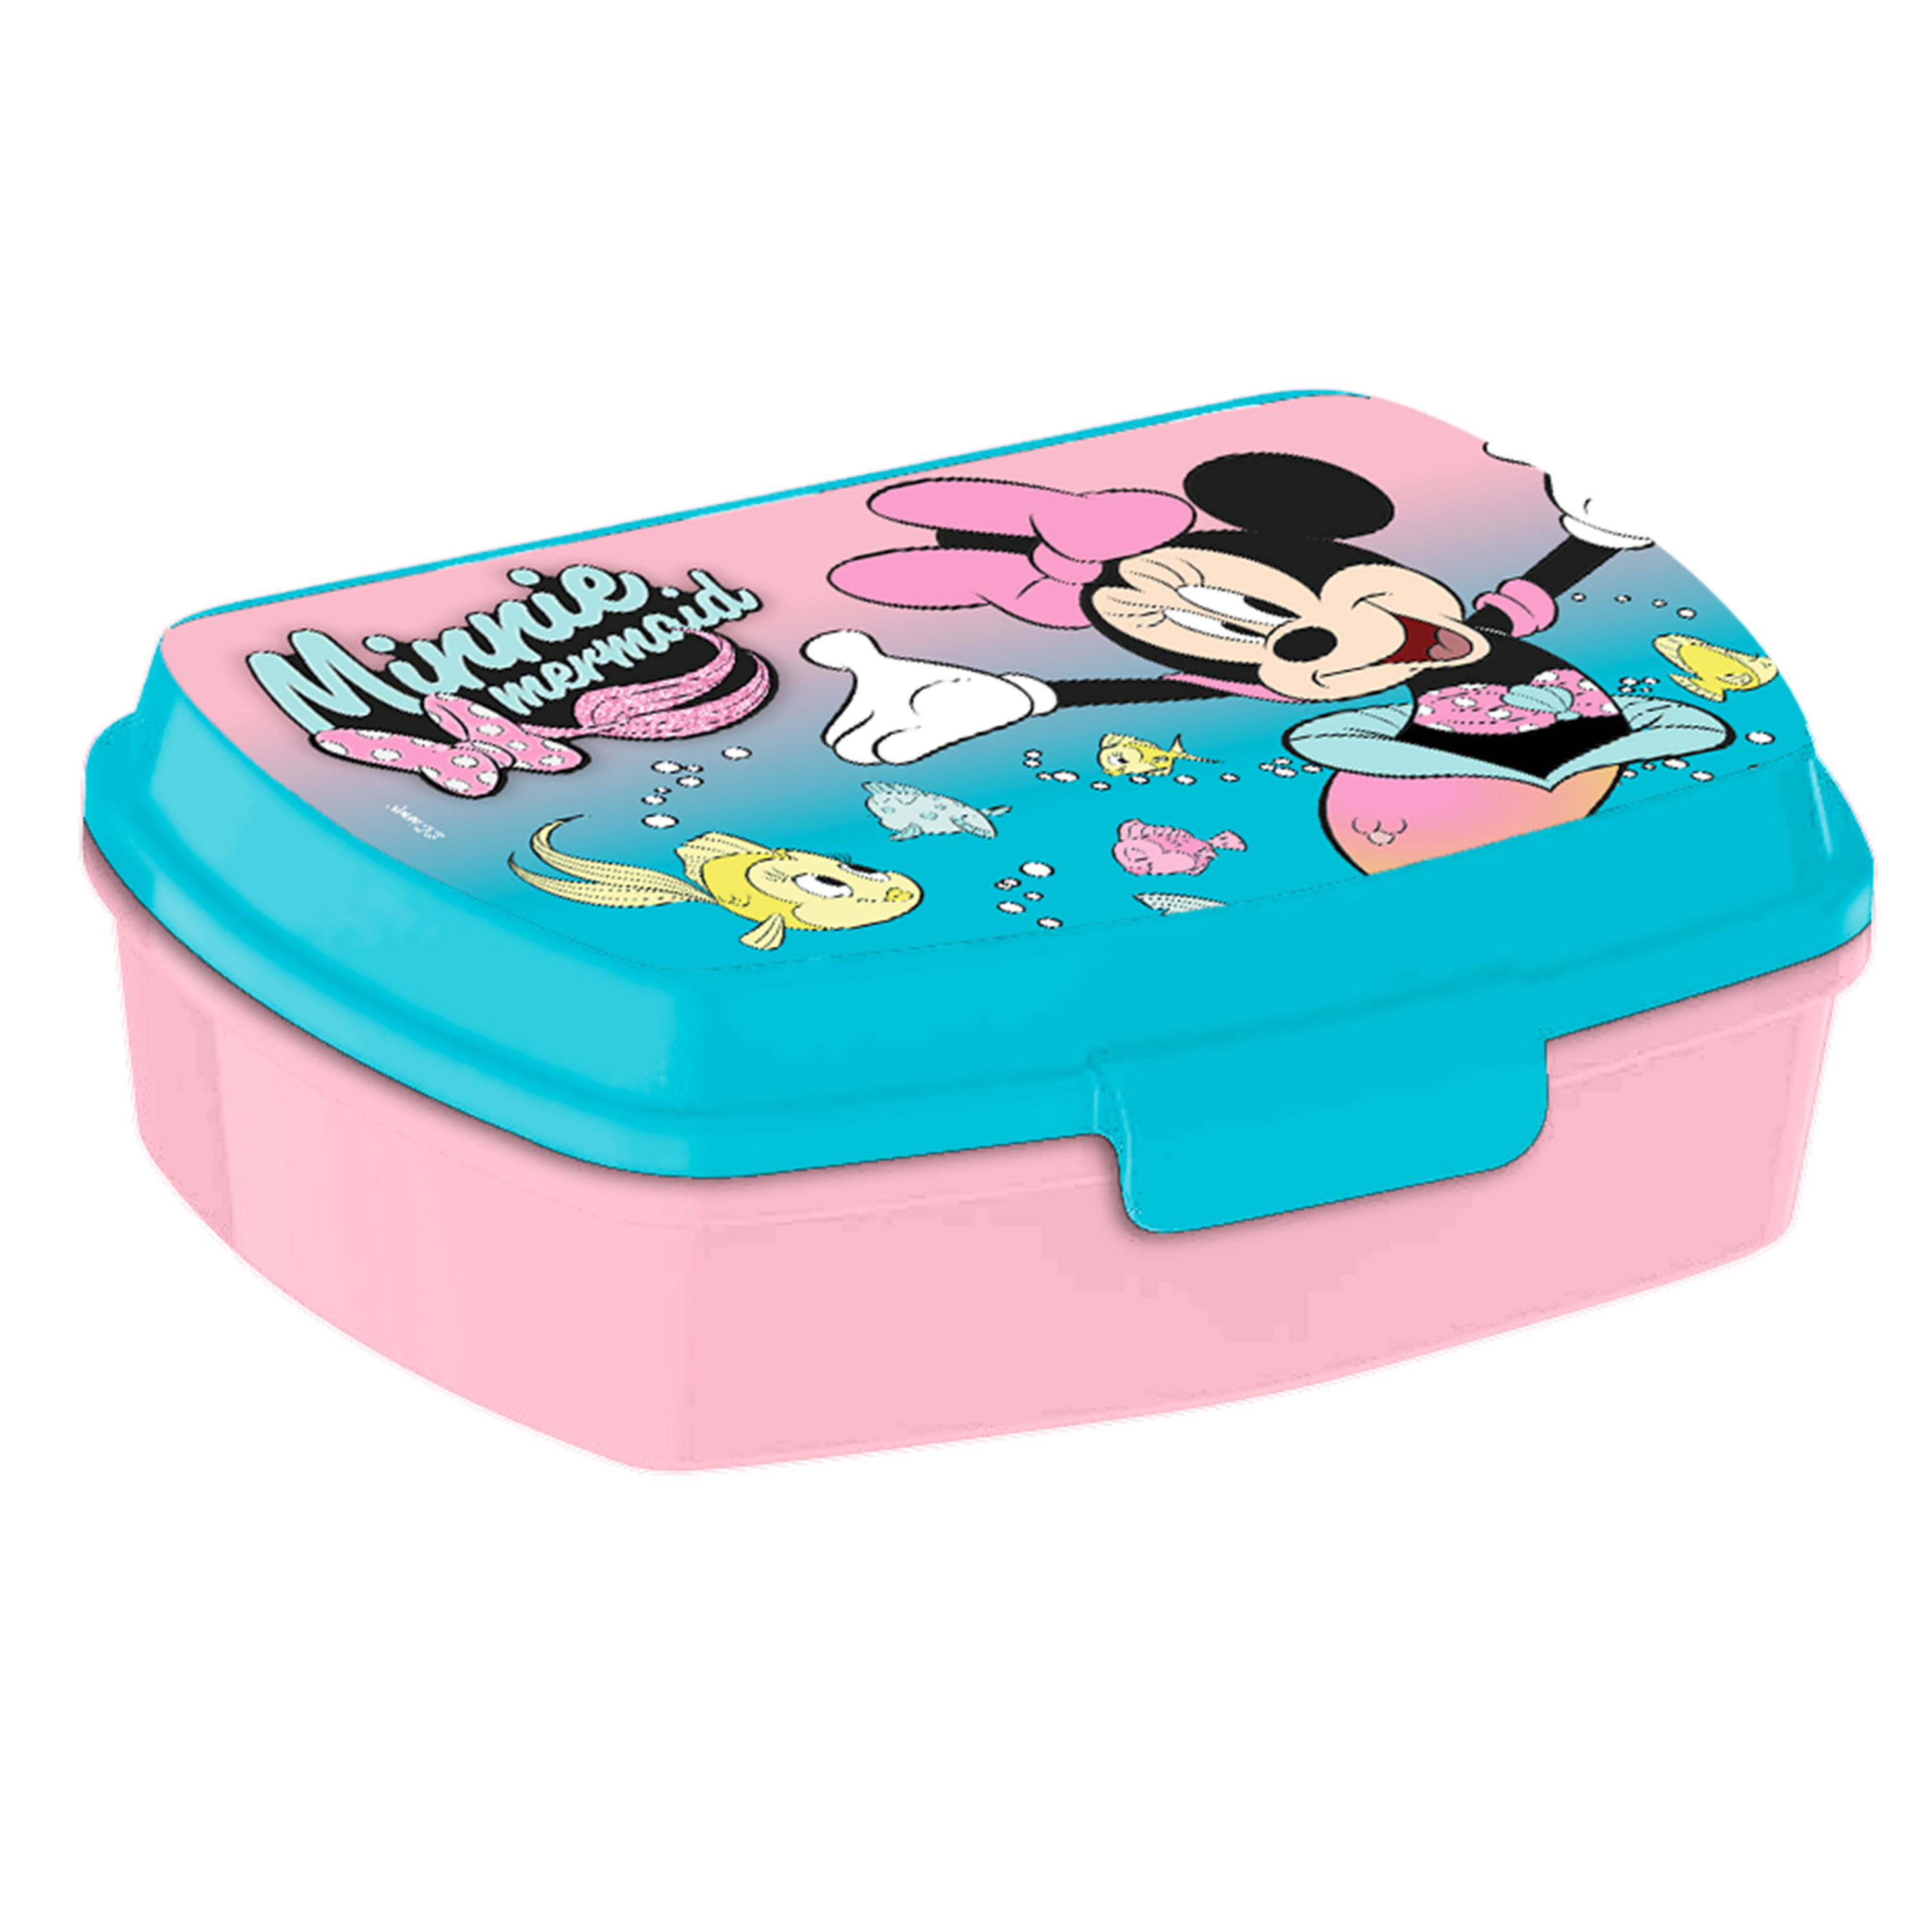 Disney Minnie Mouse broodtrommel-lunchbox voor kinderen blauw kunststof 20 x 10 cm